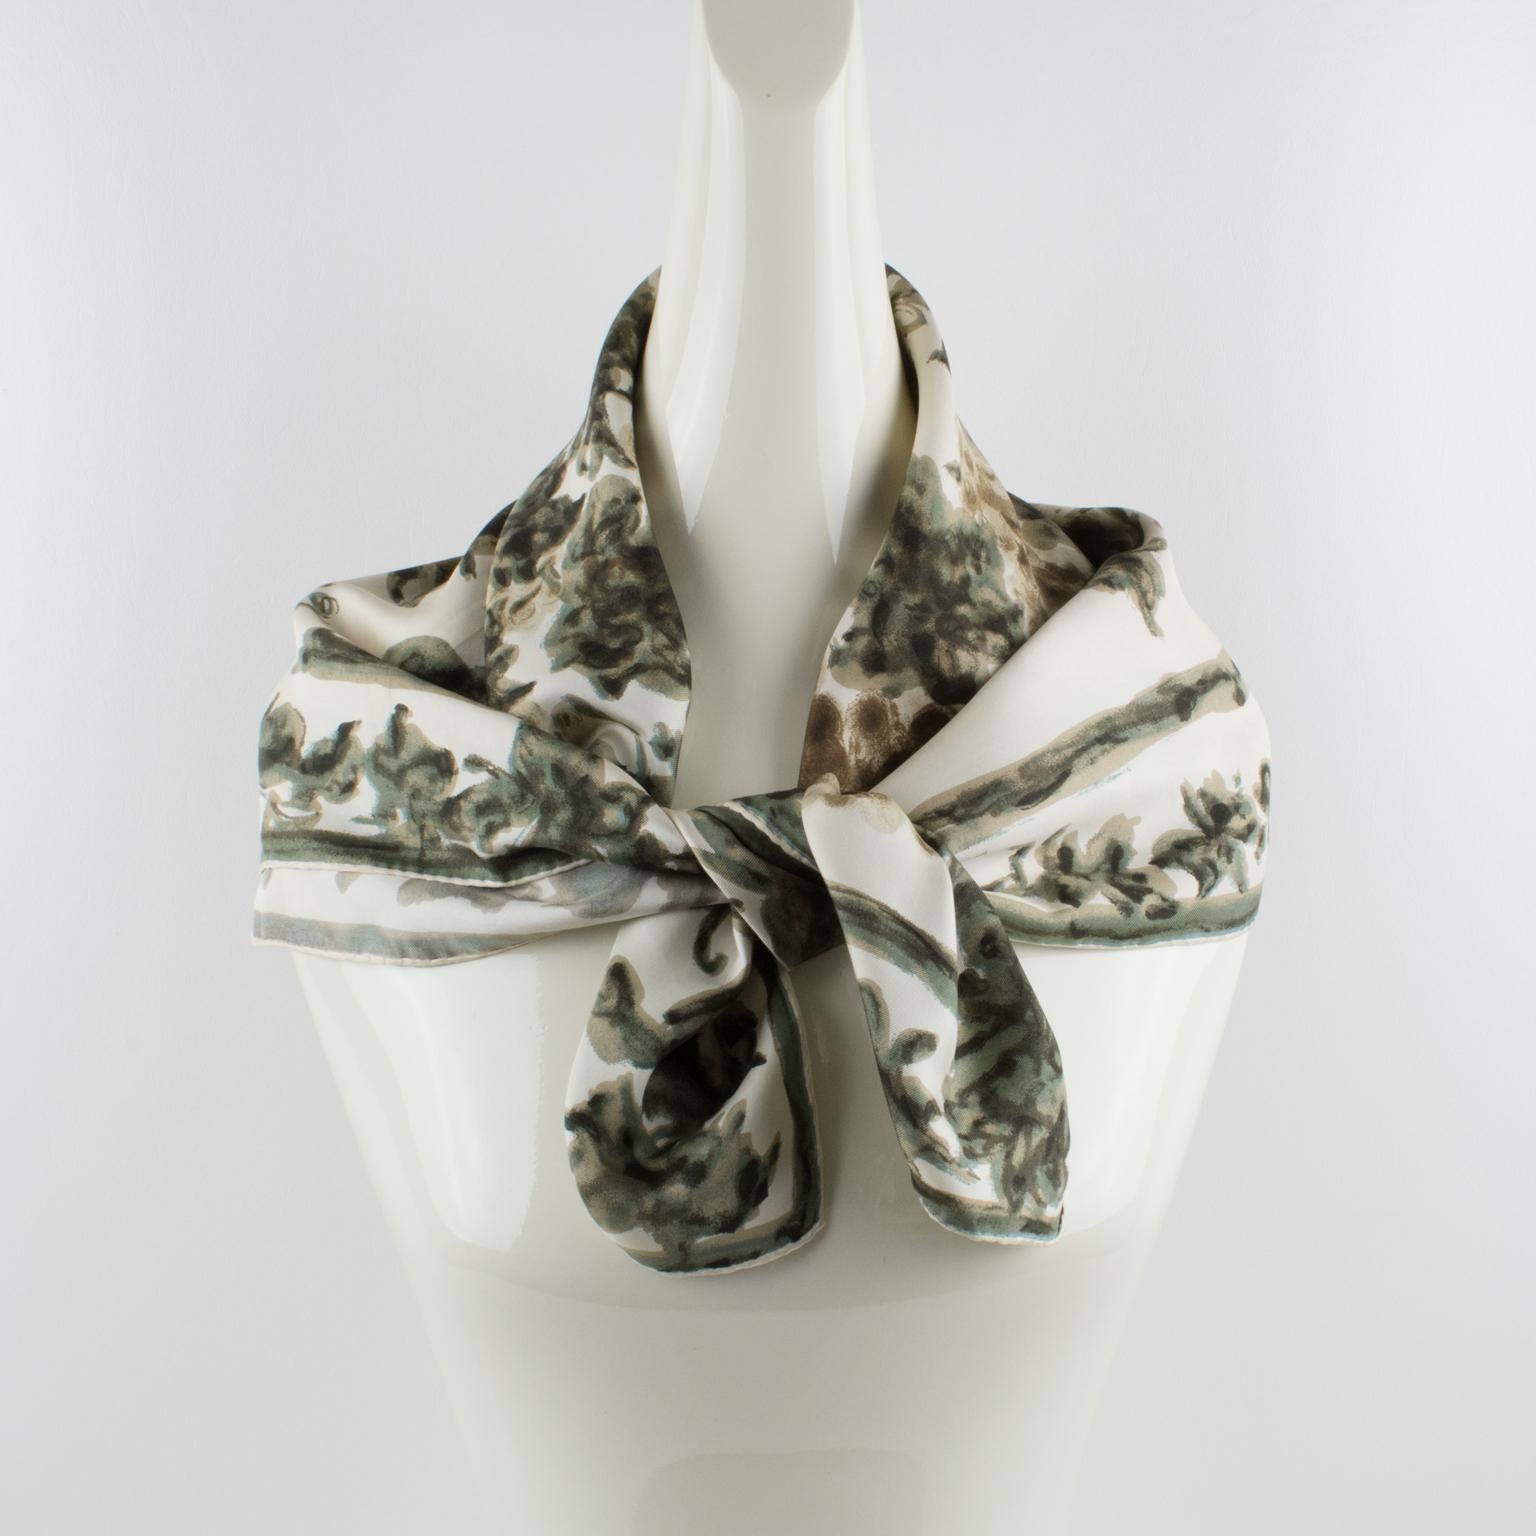 Ce superbe foulard en soie de Pierre Balmain Paris est artistiquement conçu pour ressembler à un magnifique tableau. Cette jolie pièce présente un enchevêtrement de feuilles de vigne et de grappes de raisin dans une combinaison de couleurs vert